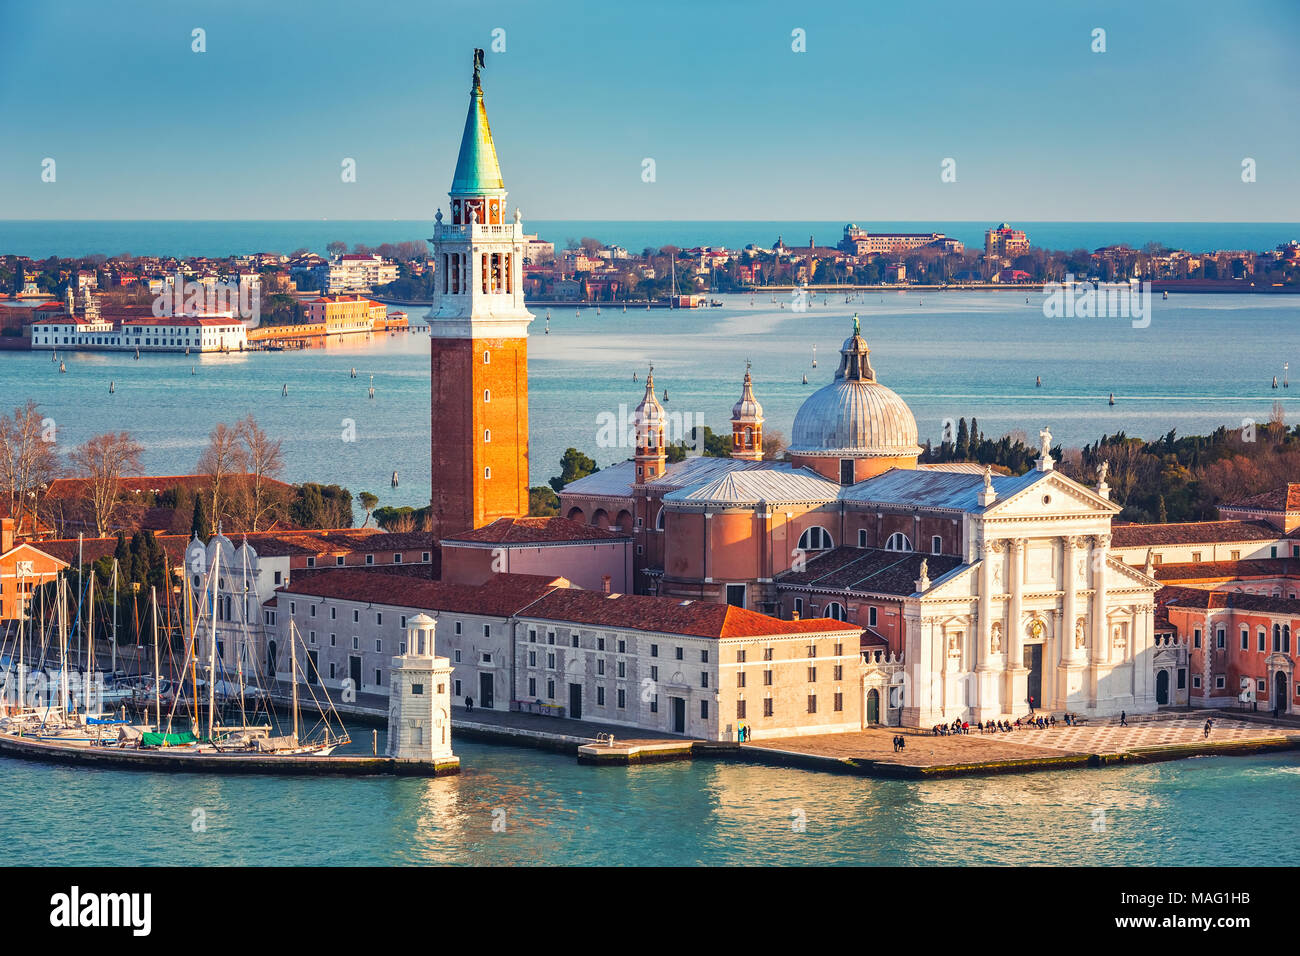 San Giorgio Maggiore island, Venice Stock Photo - Alamy